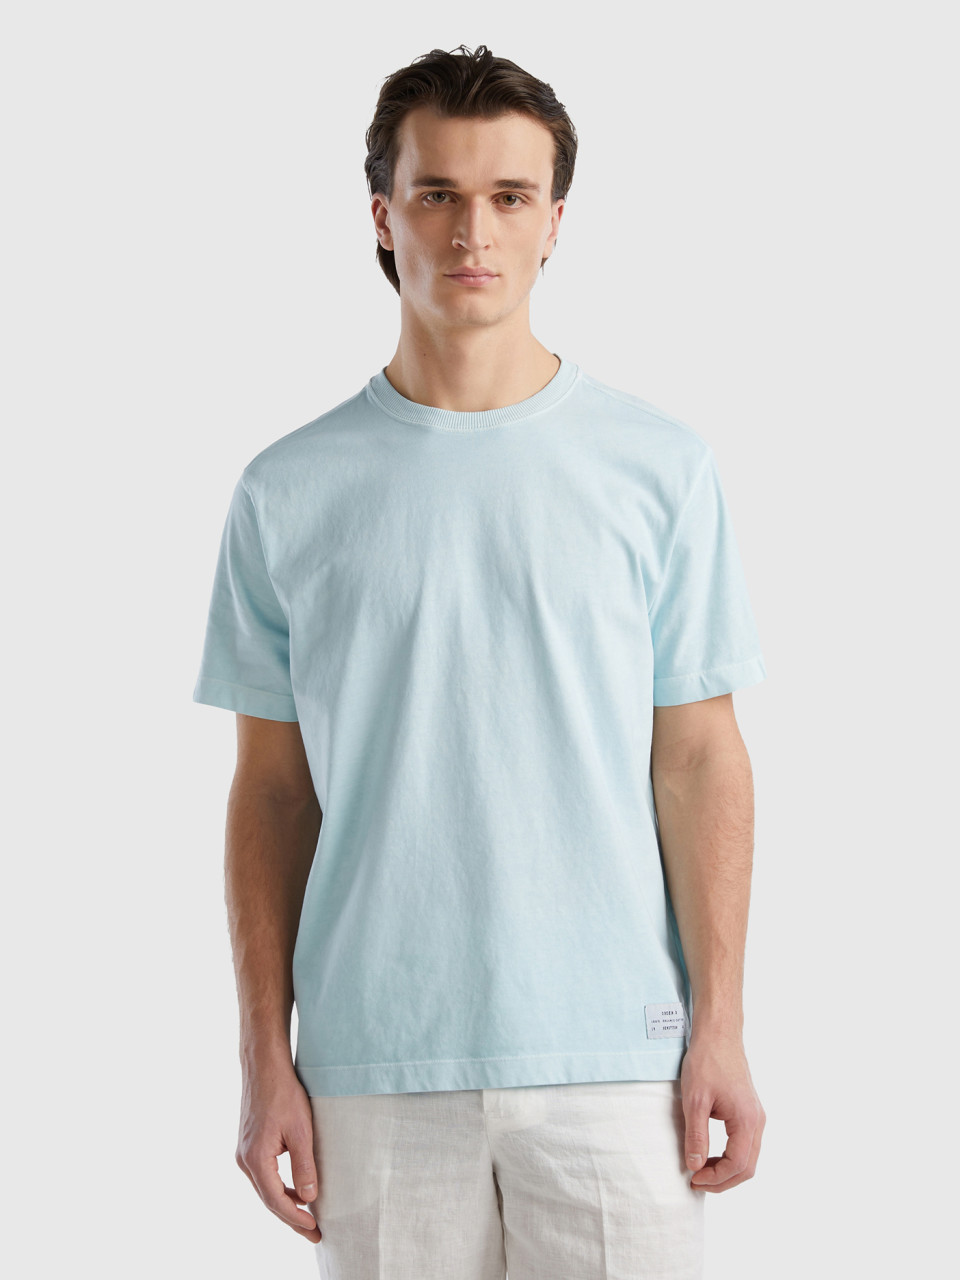 Benetton, T-shirt De Gola Redonda 100% Algodão Orgânico, Verde Água, Homem